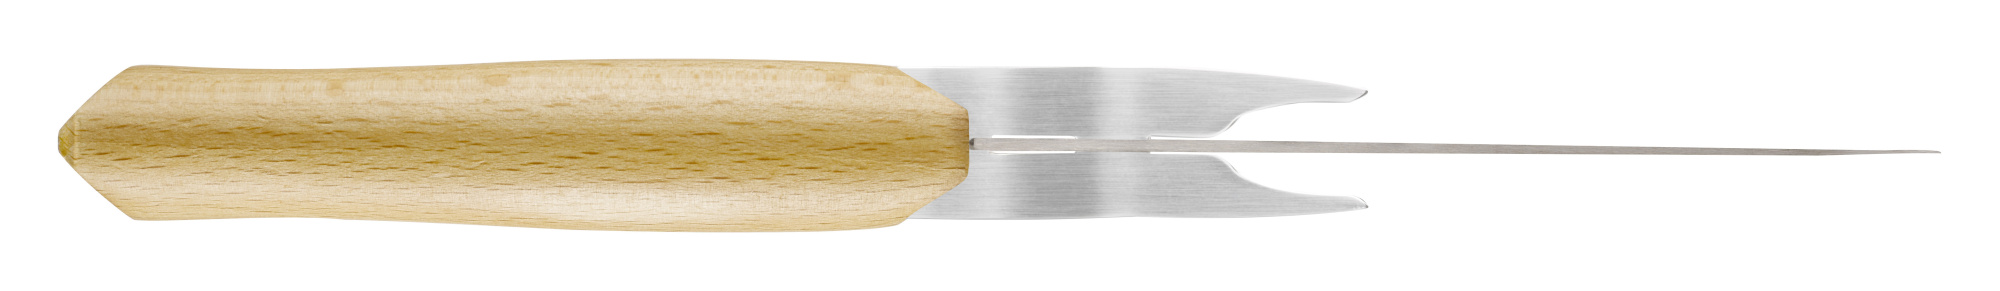 картинка Набор ножей для резки сыра Opinel Cheese set (нож+ вилка), дерев. рукоять, нерж, сталь, кор. 001834